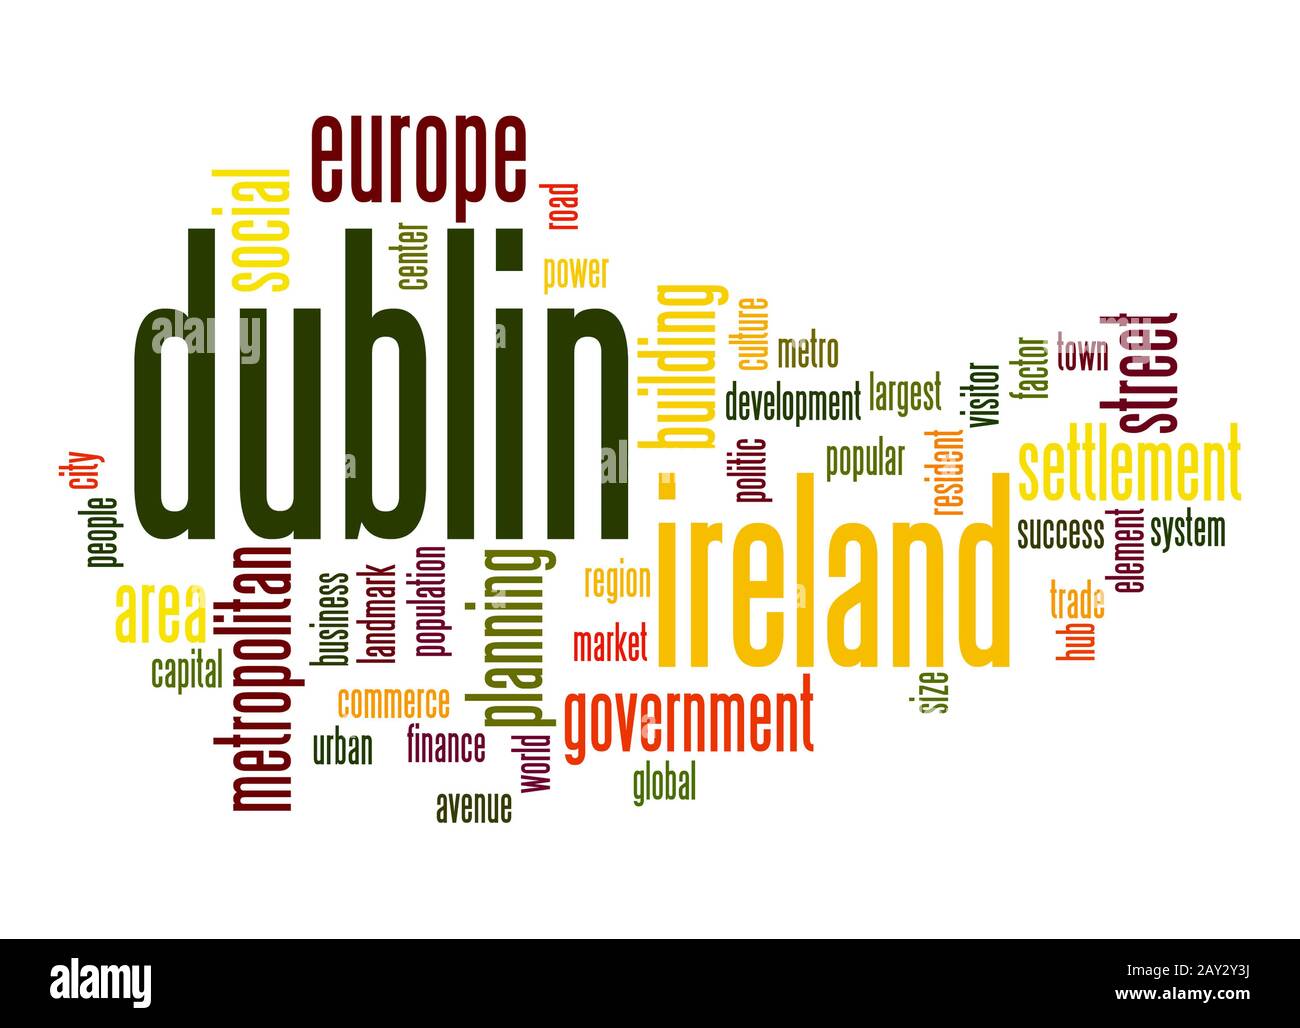 Dublin word cloud Stock Photo